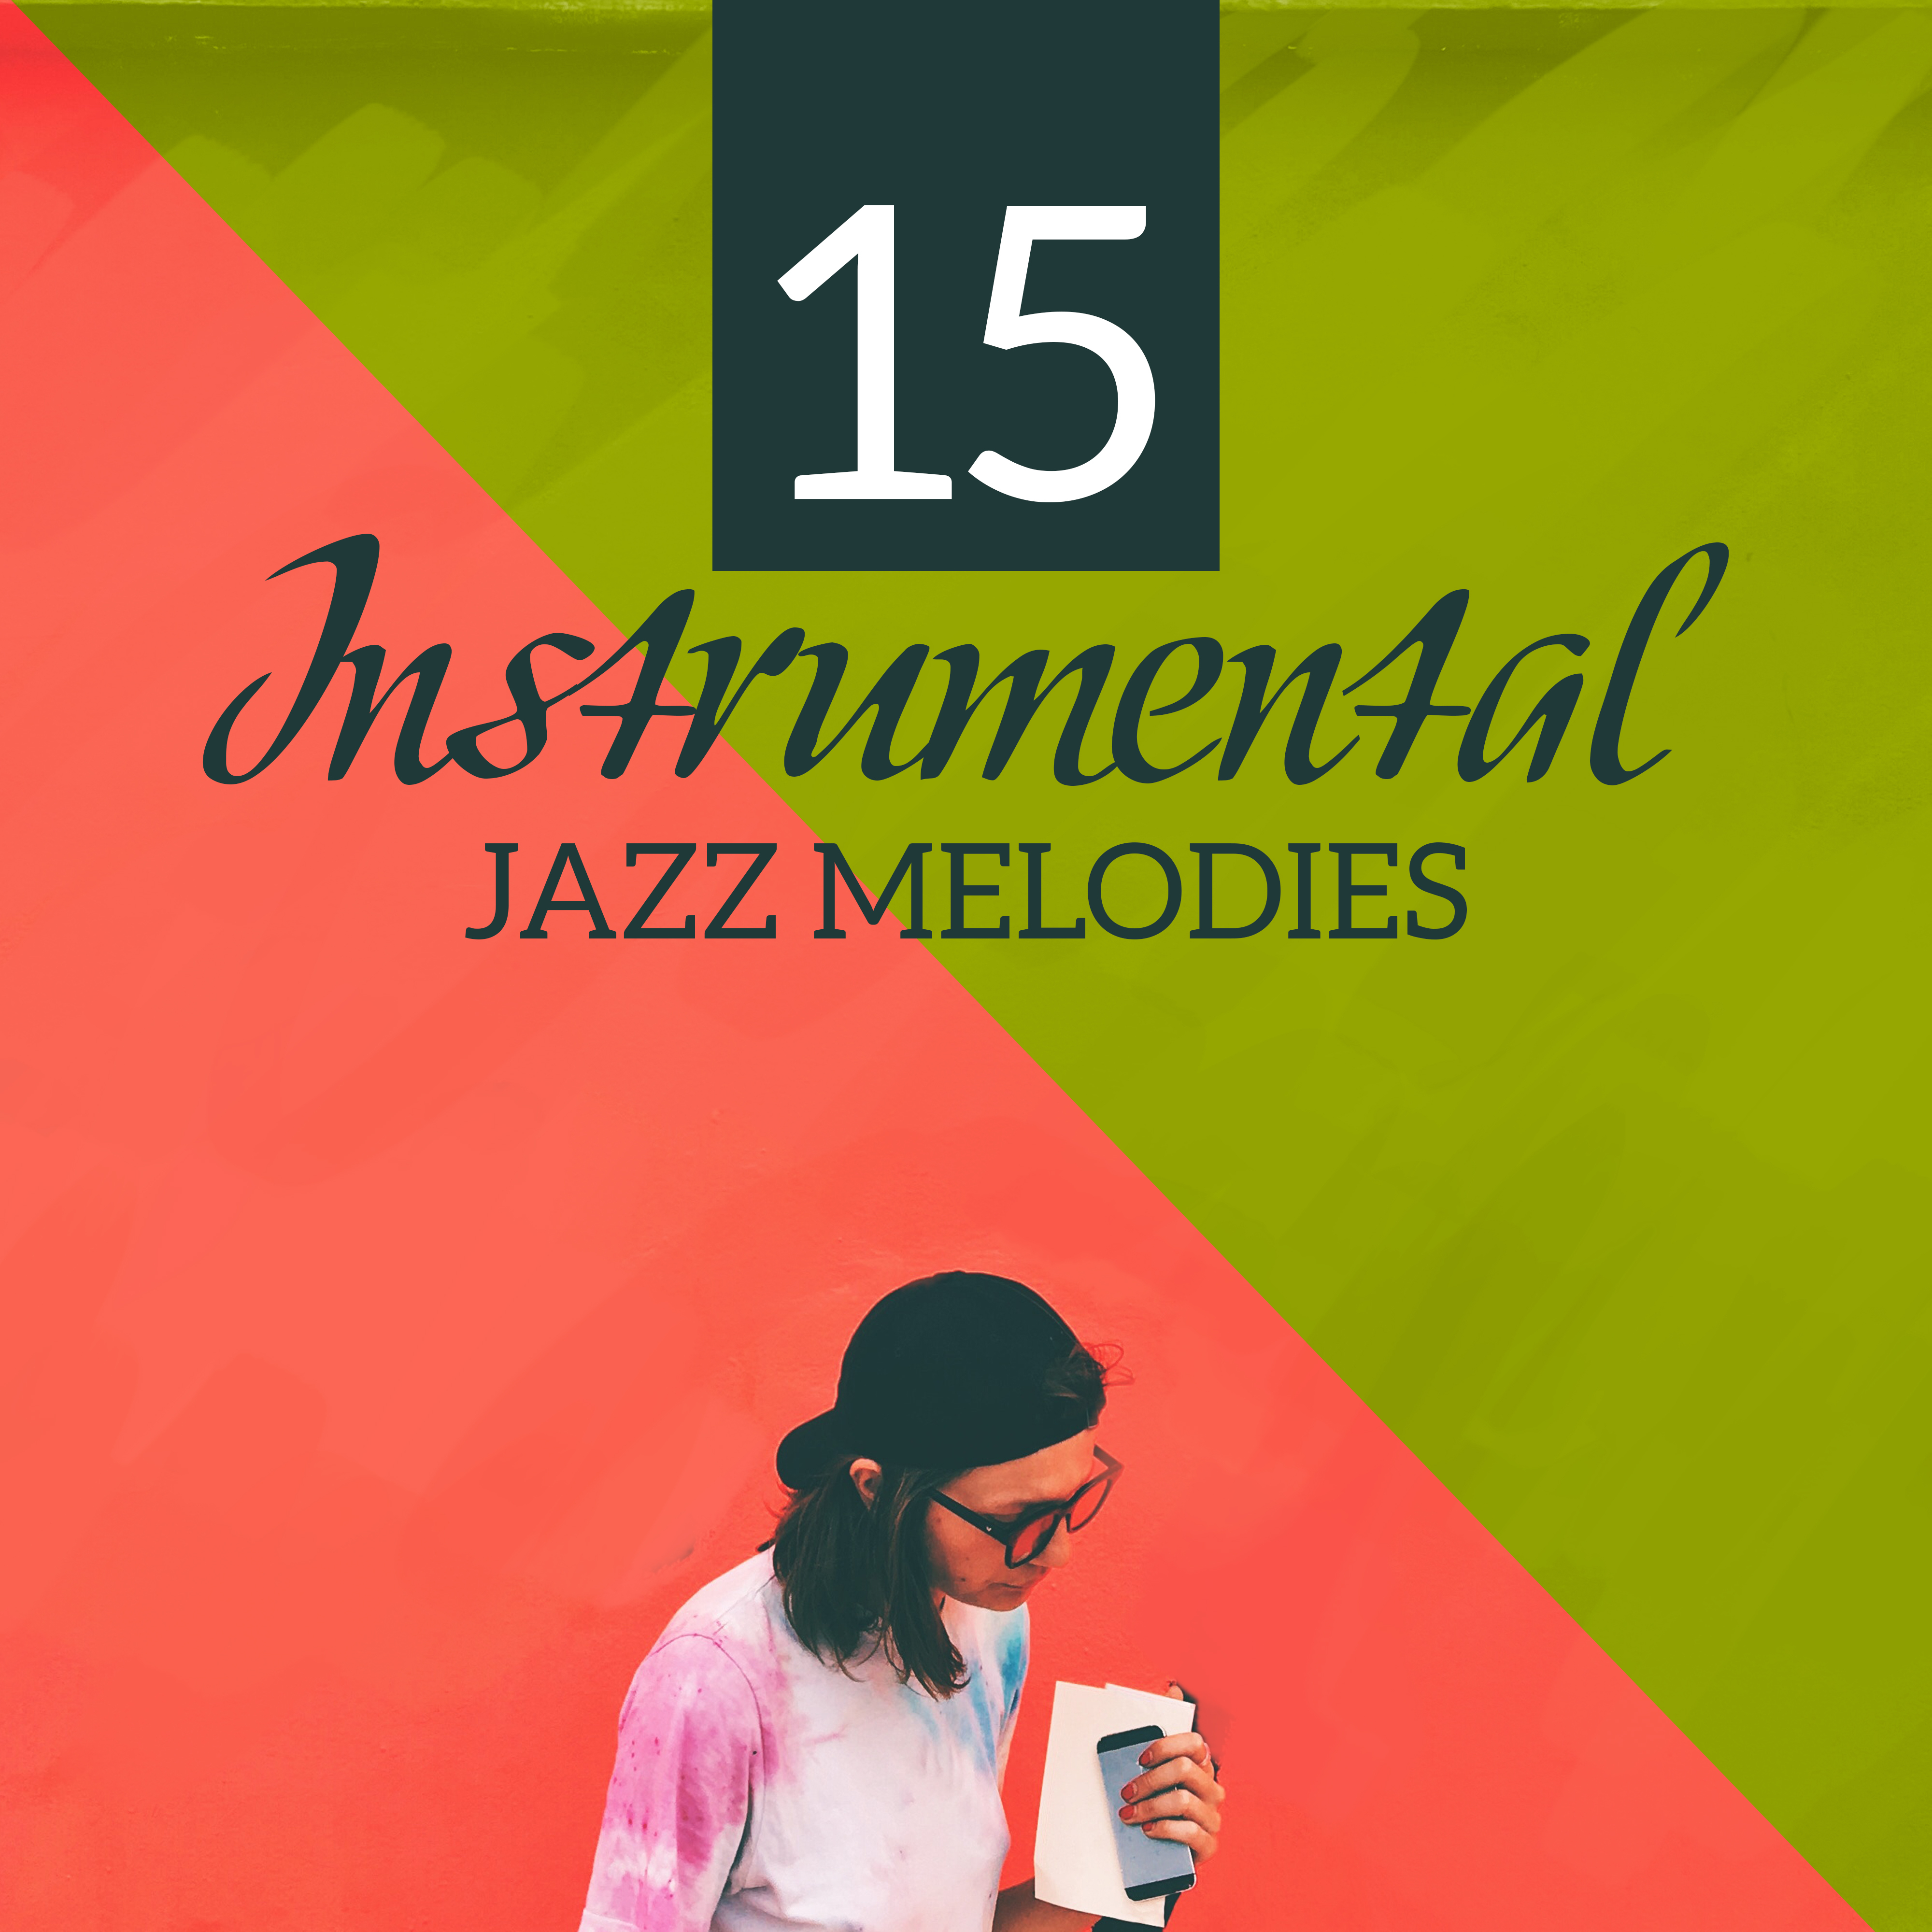 15 Instrumental Jazz Melodies